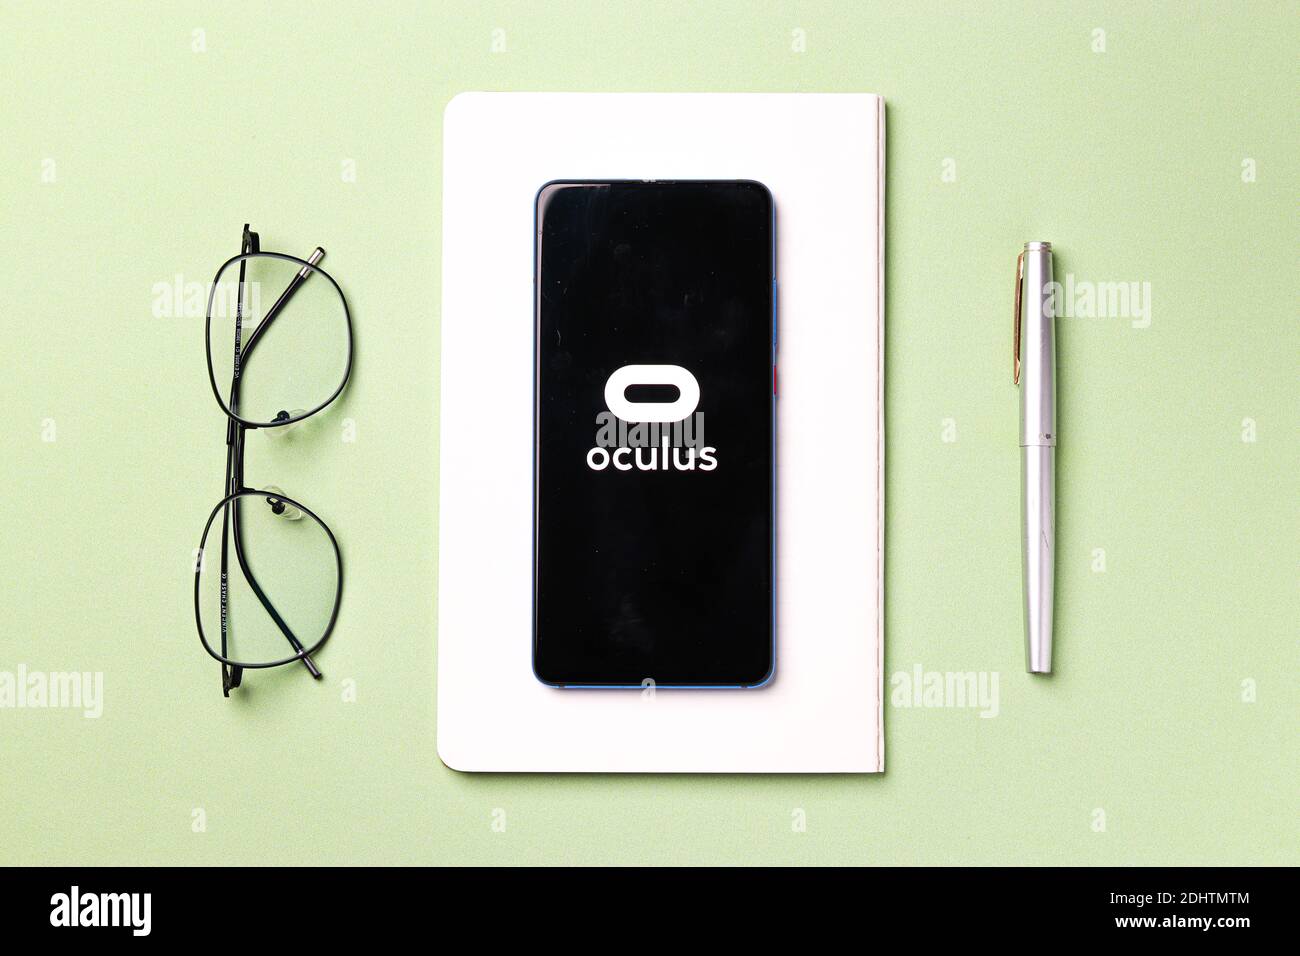 Assam, inde - 20 décembre 2020 : logo Oculus sur image de stock d'écran de téléphone. Banque D'Images